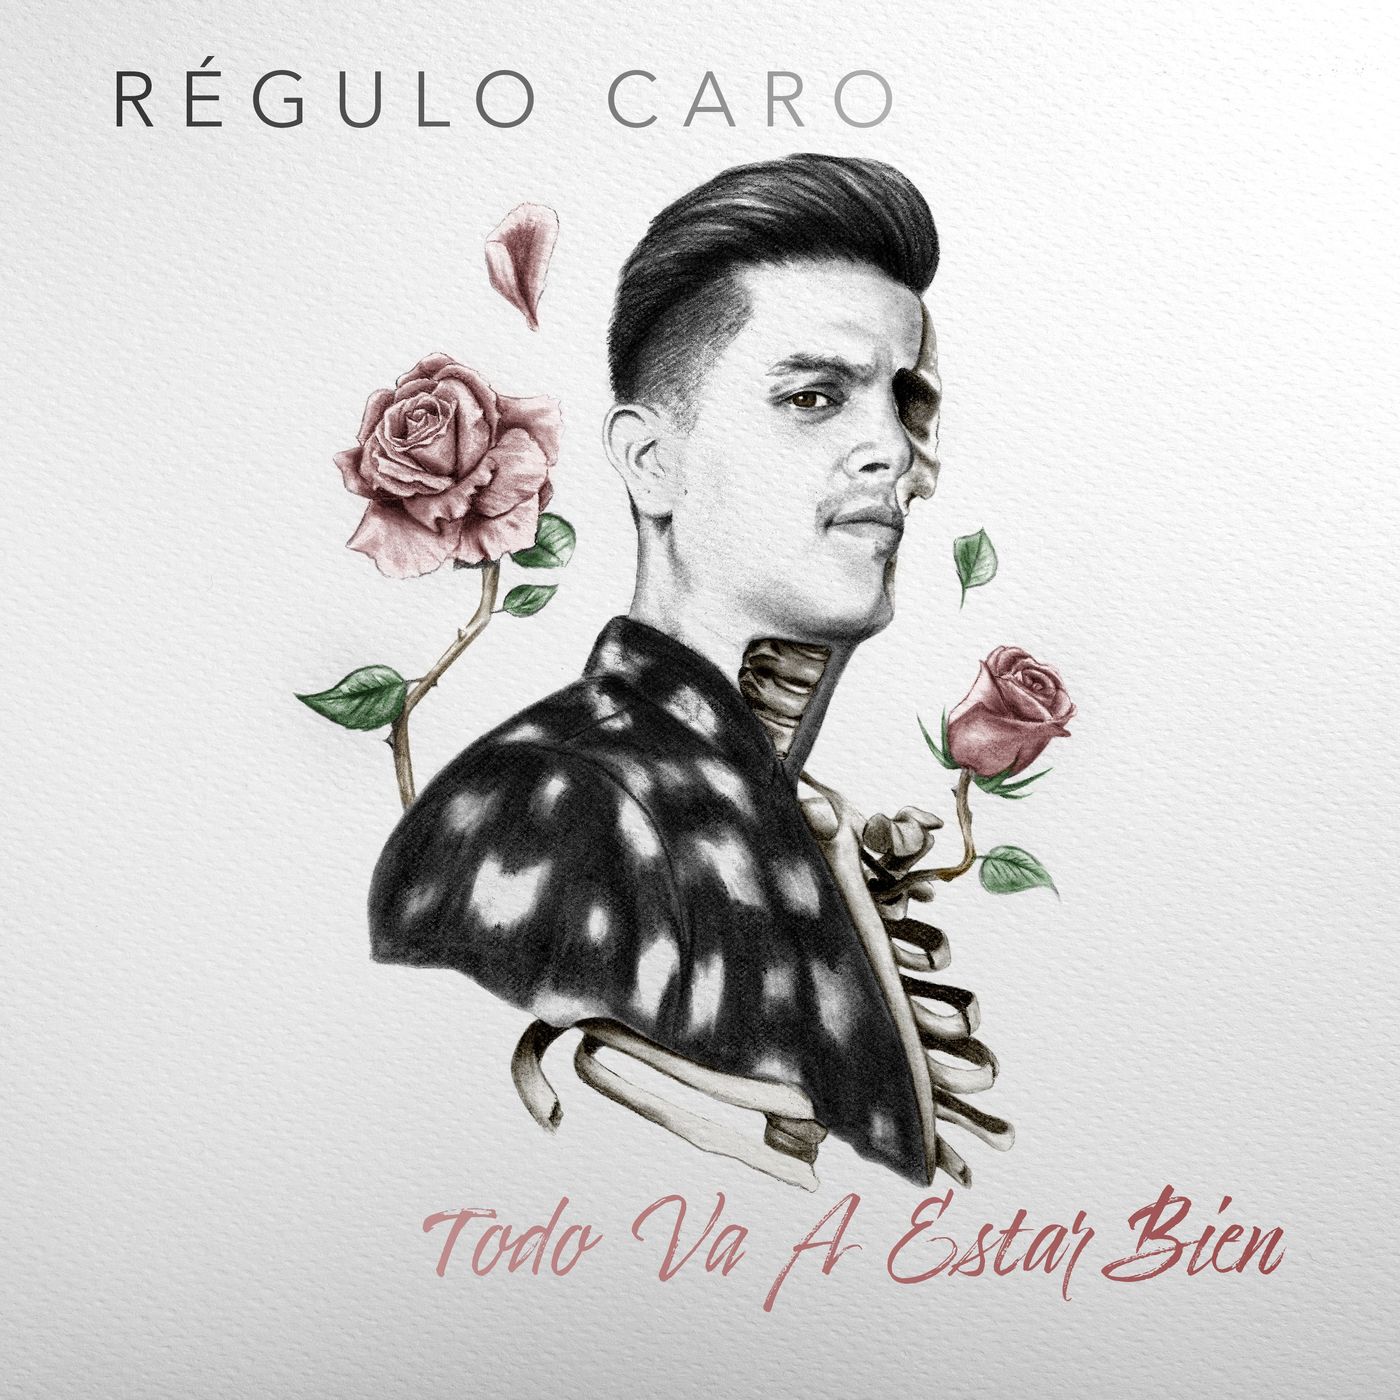 Regulo Caro – Todo Va A Estar Bien (Álbum 2020)